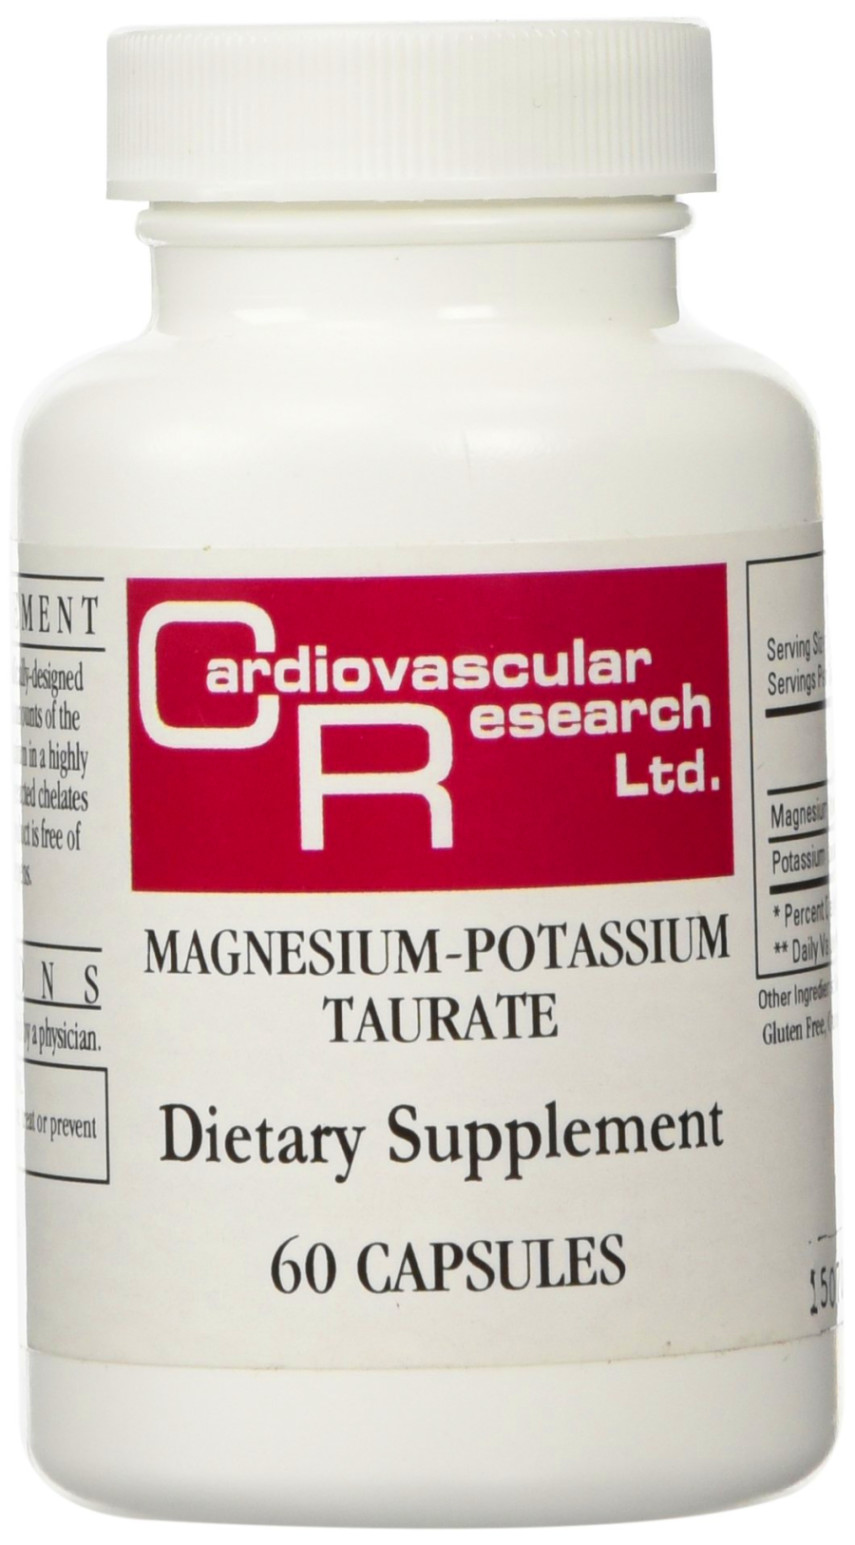 Cardiovascular Research Ltd Magnesium Potassium Taurate 60 Capsules  ORIGINAL